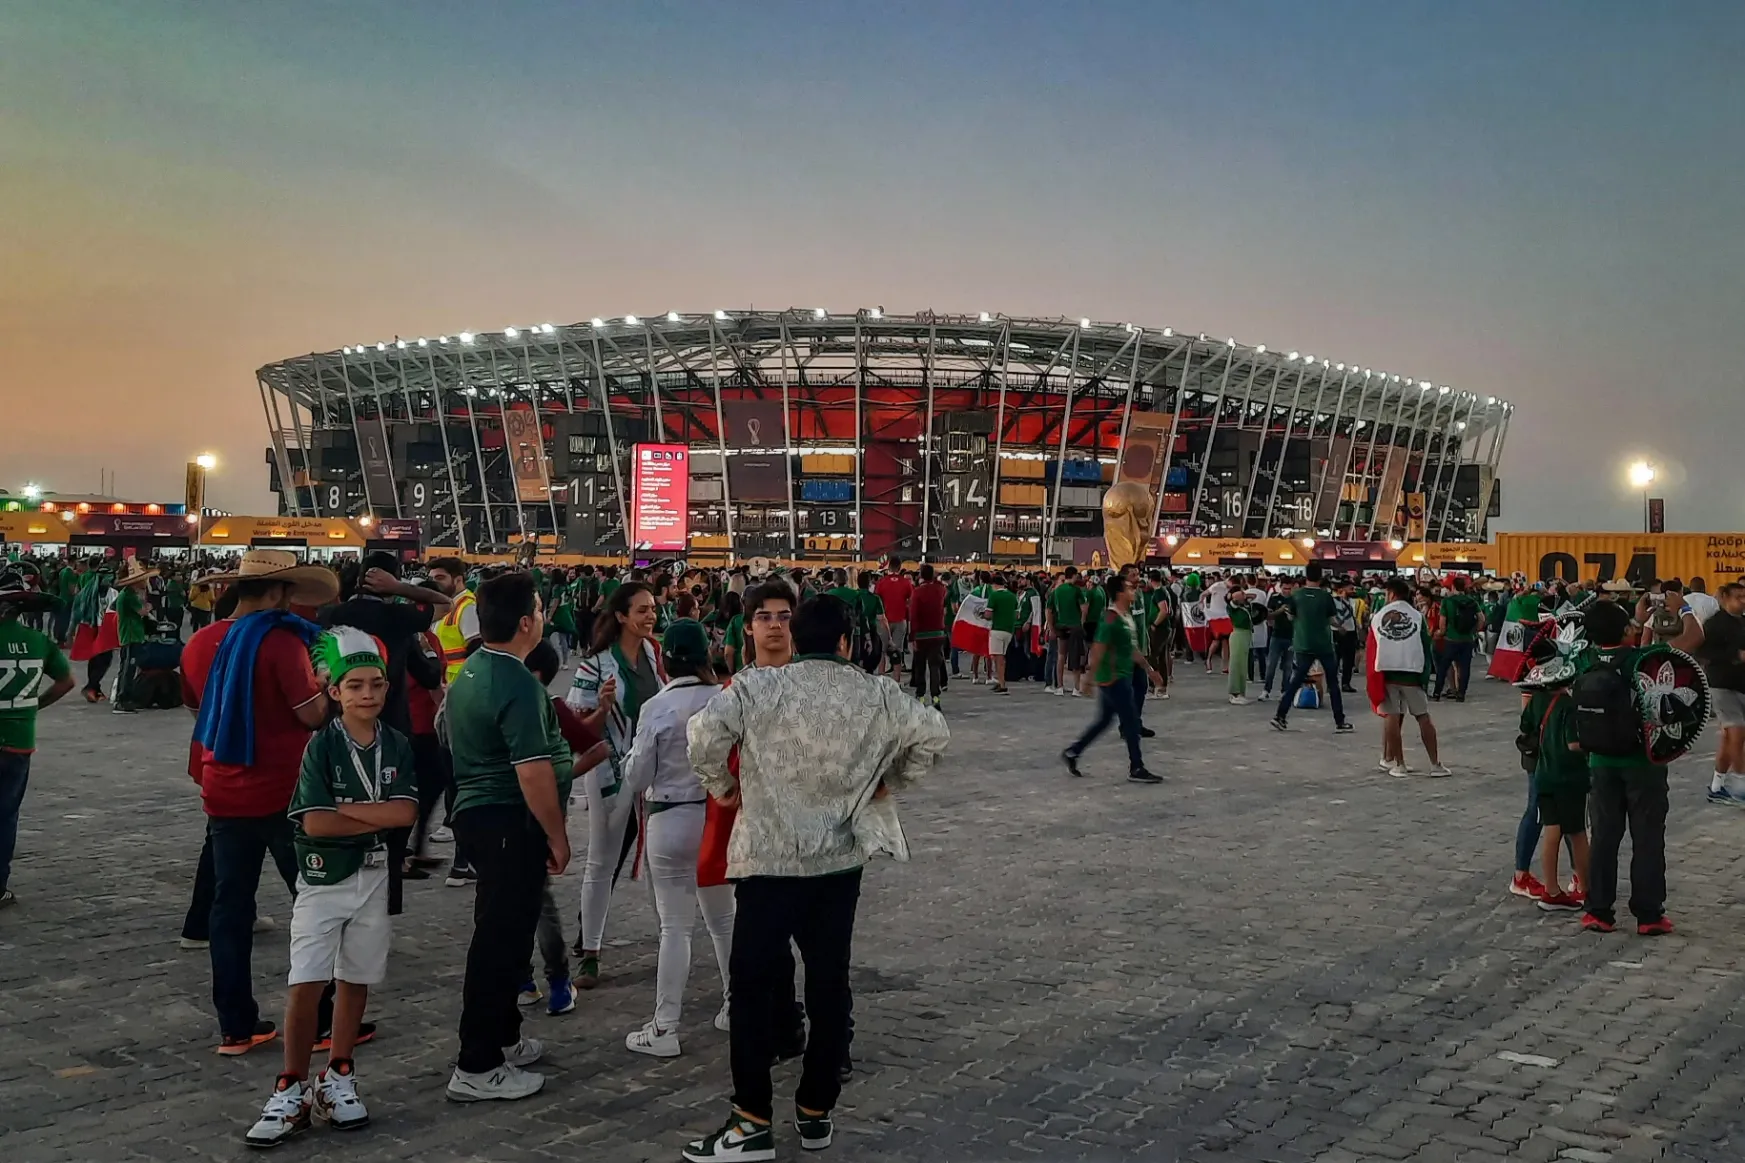 Beleremegett a mexikói szurkolásba a szét- és összelegózható vb-stadion